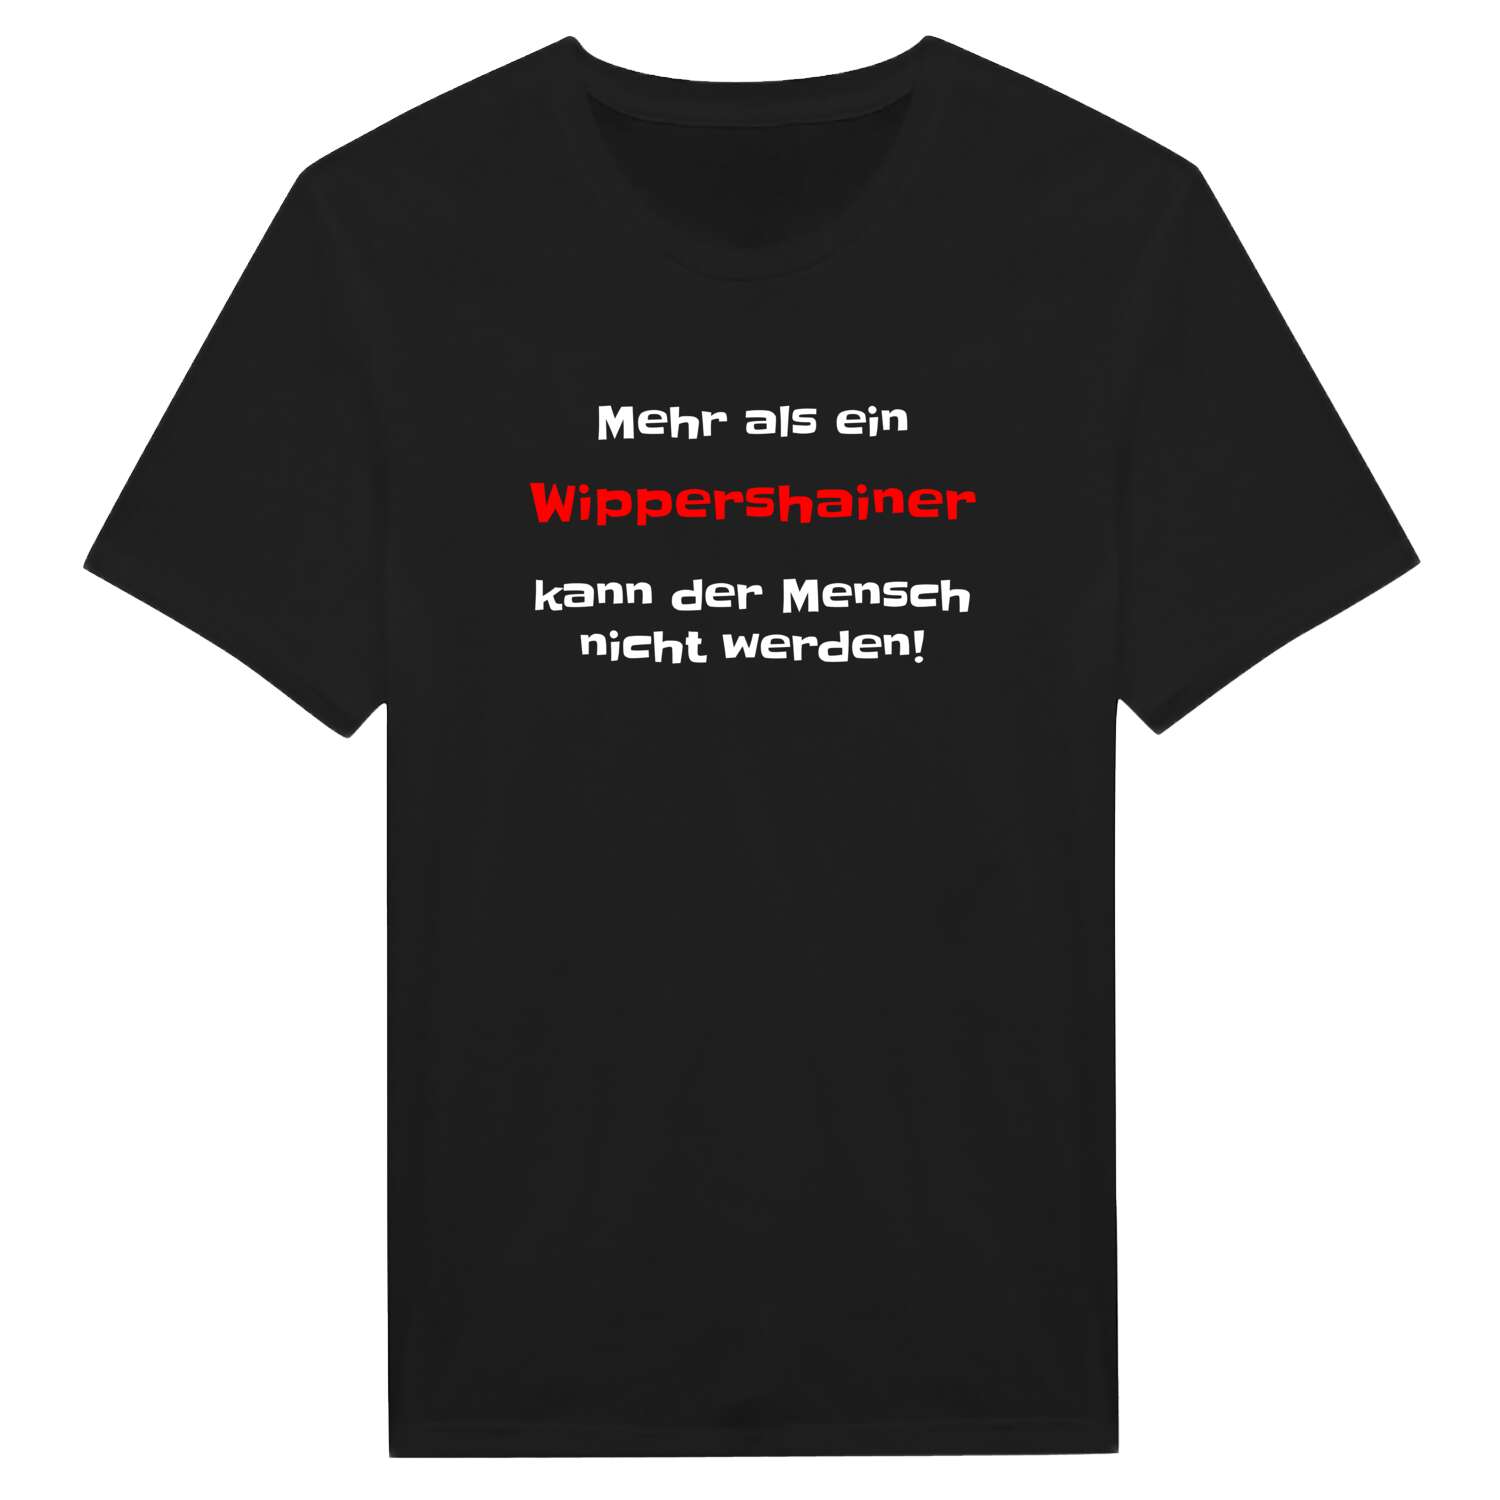 Wippershain T-Shirt »Mehr als ein«